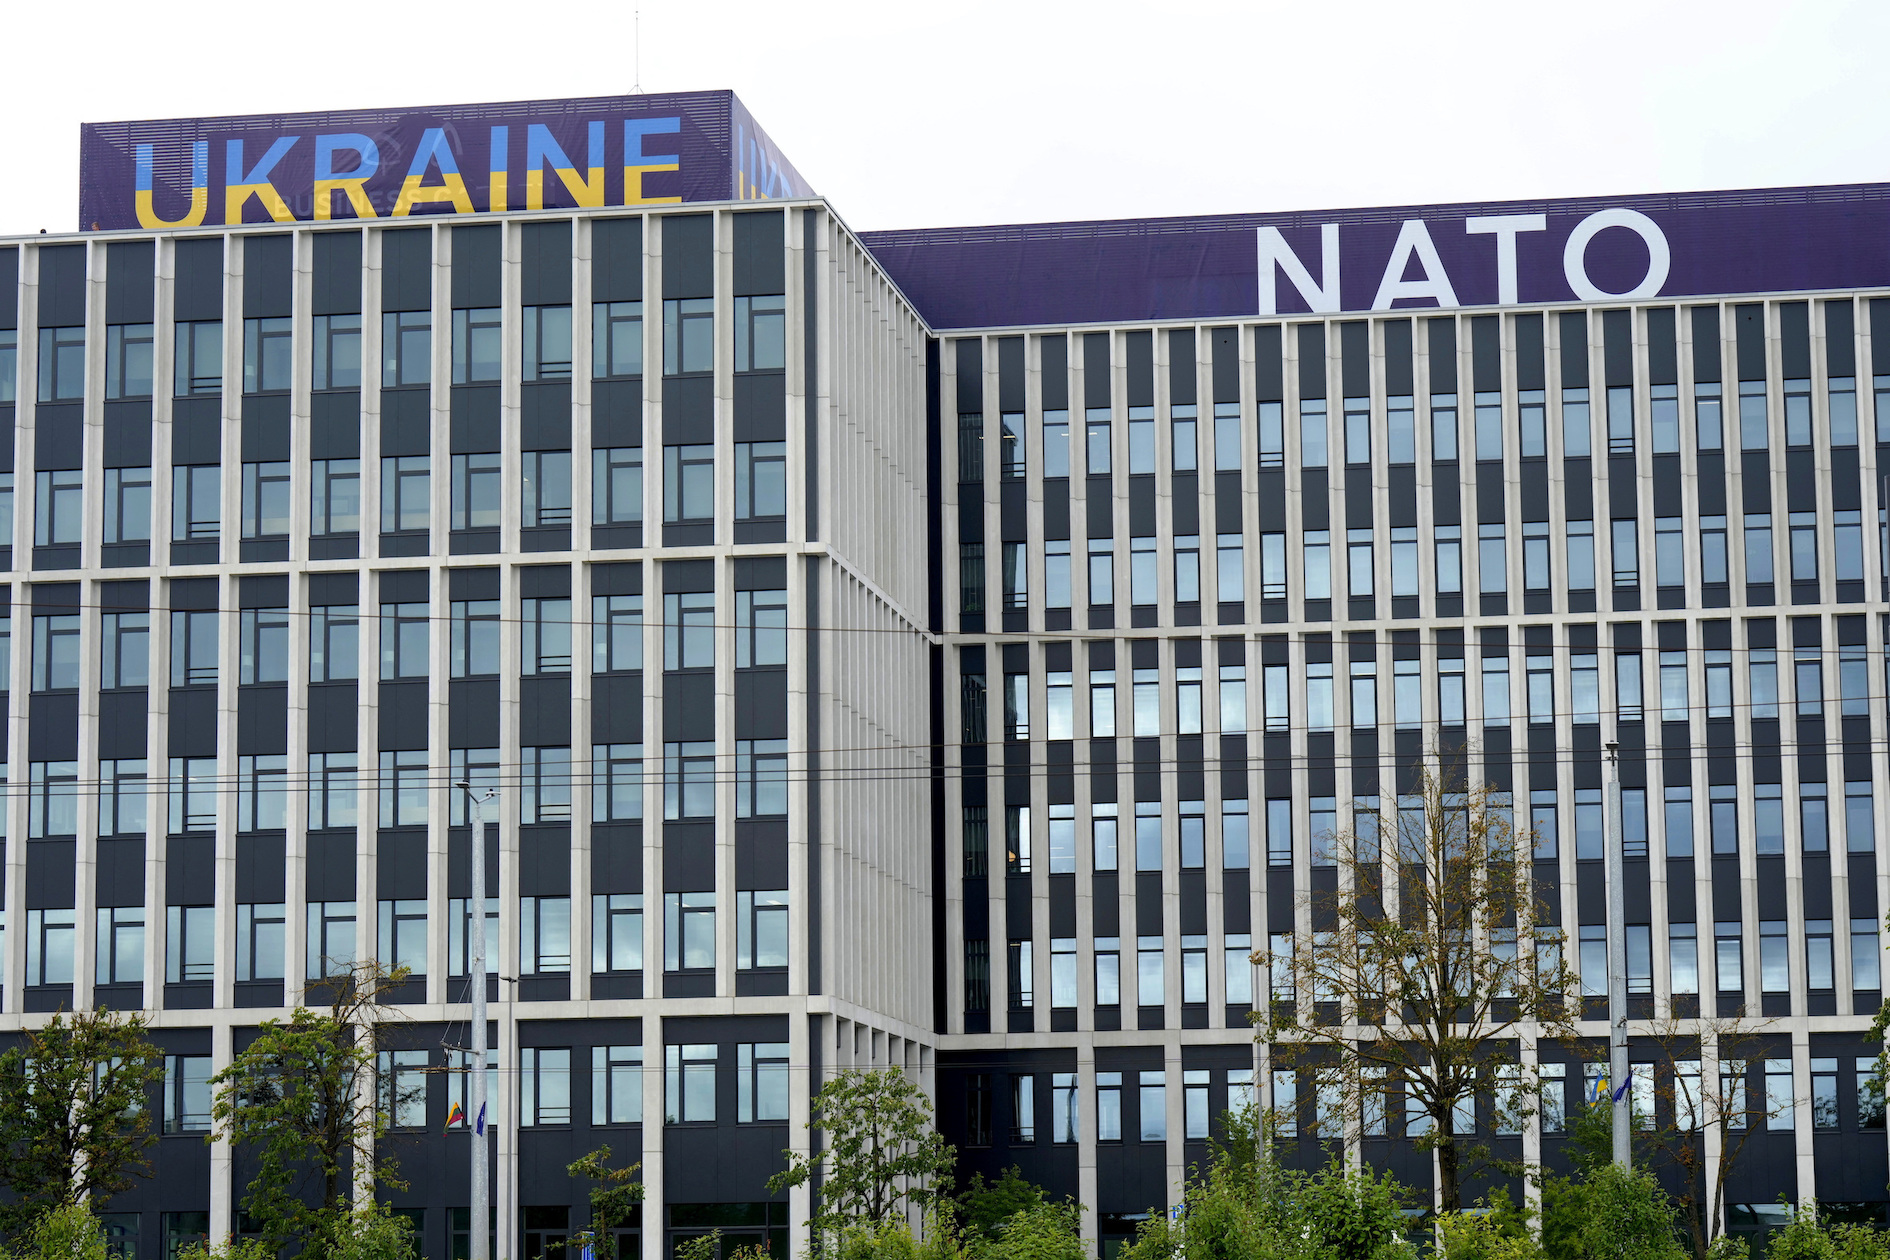 ยูเครน นาโต้ NATO